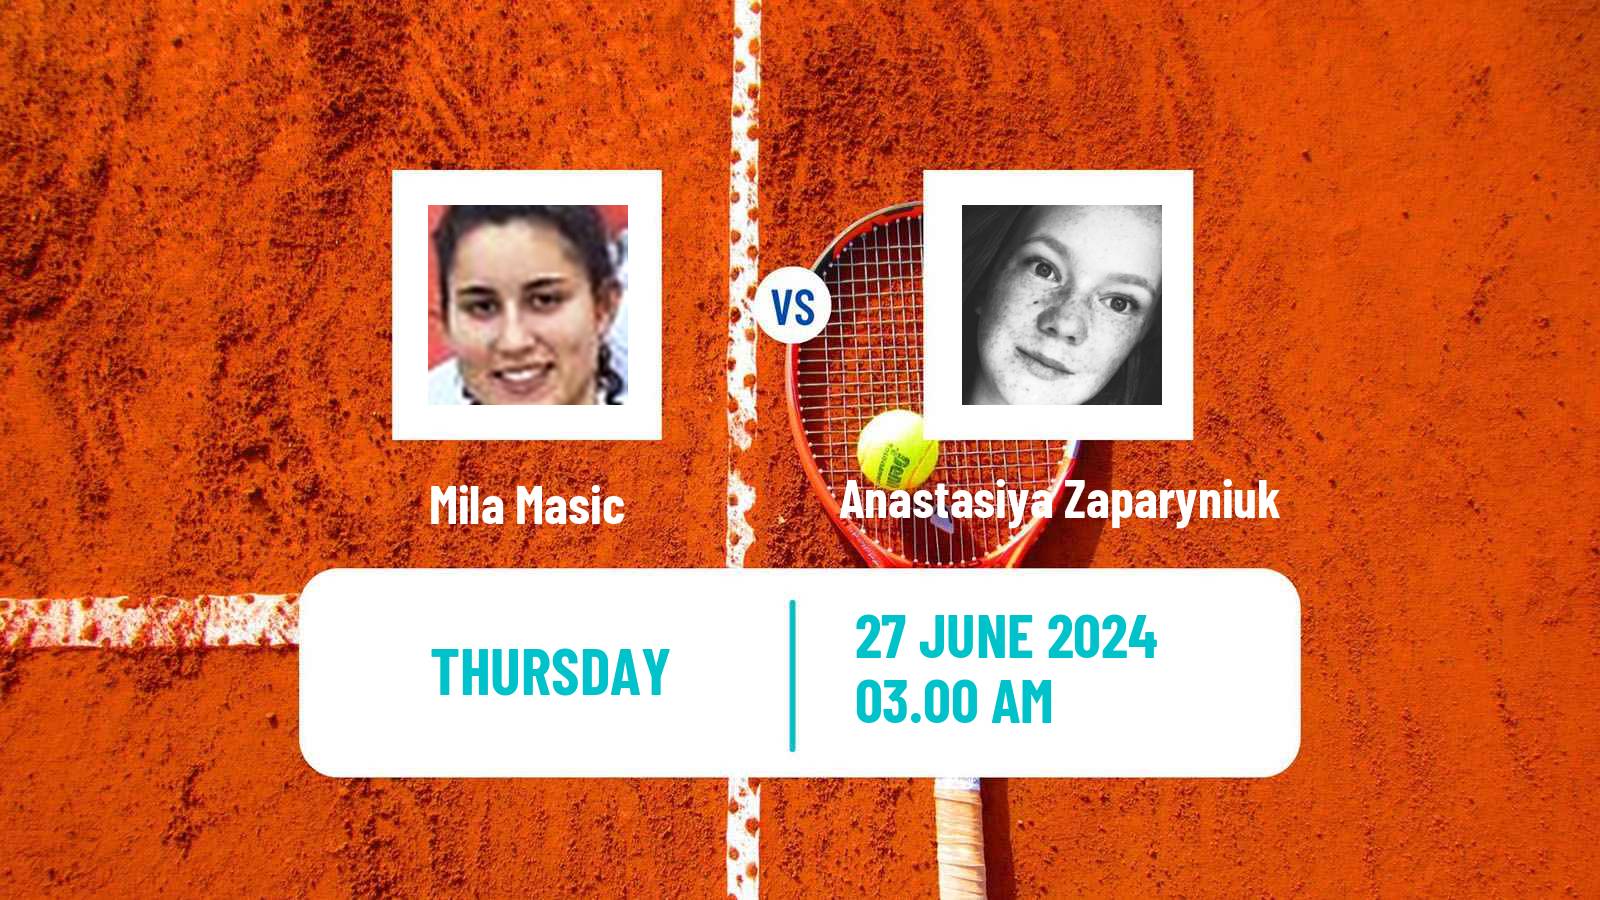 Tennis ITF W15 Kursumlijska Banja 9 Women Mila Masic - Anastasiya Zaparyniuk